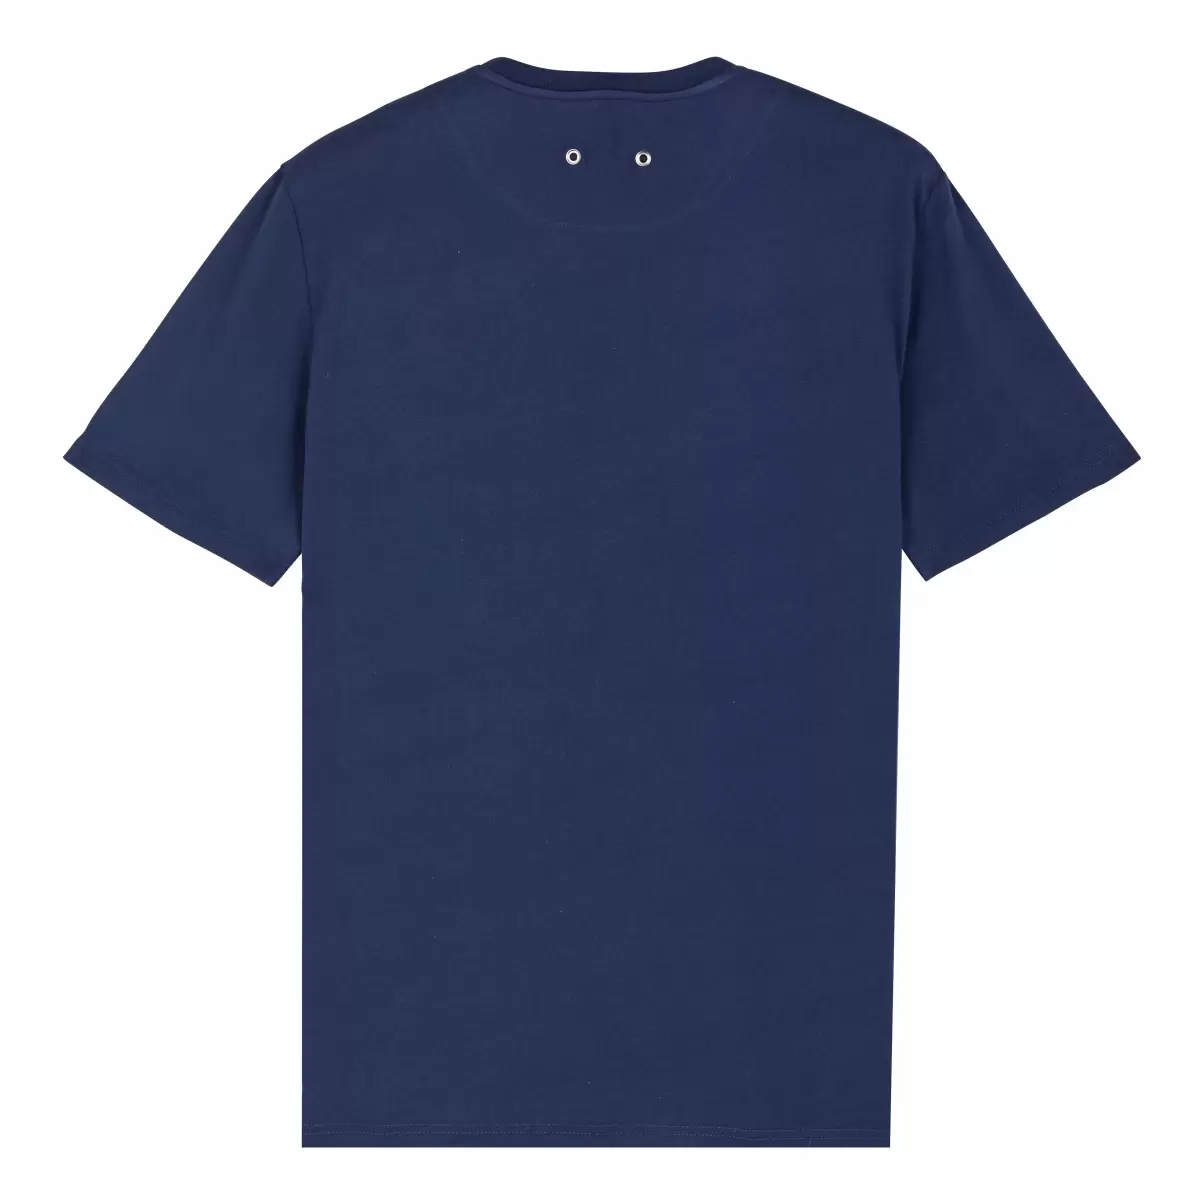 Hombre Camisetas Camiseta De Algodón Orgánico De Color Liso Para Hombre Azul Marino / Azul Moderno Vilebrequin - 4